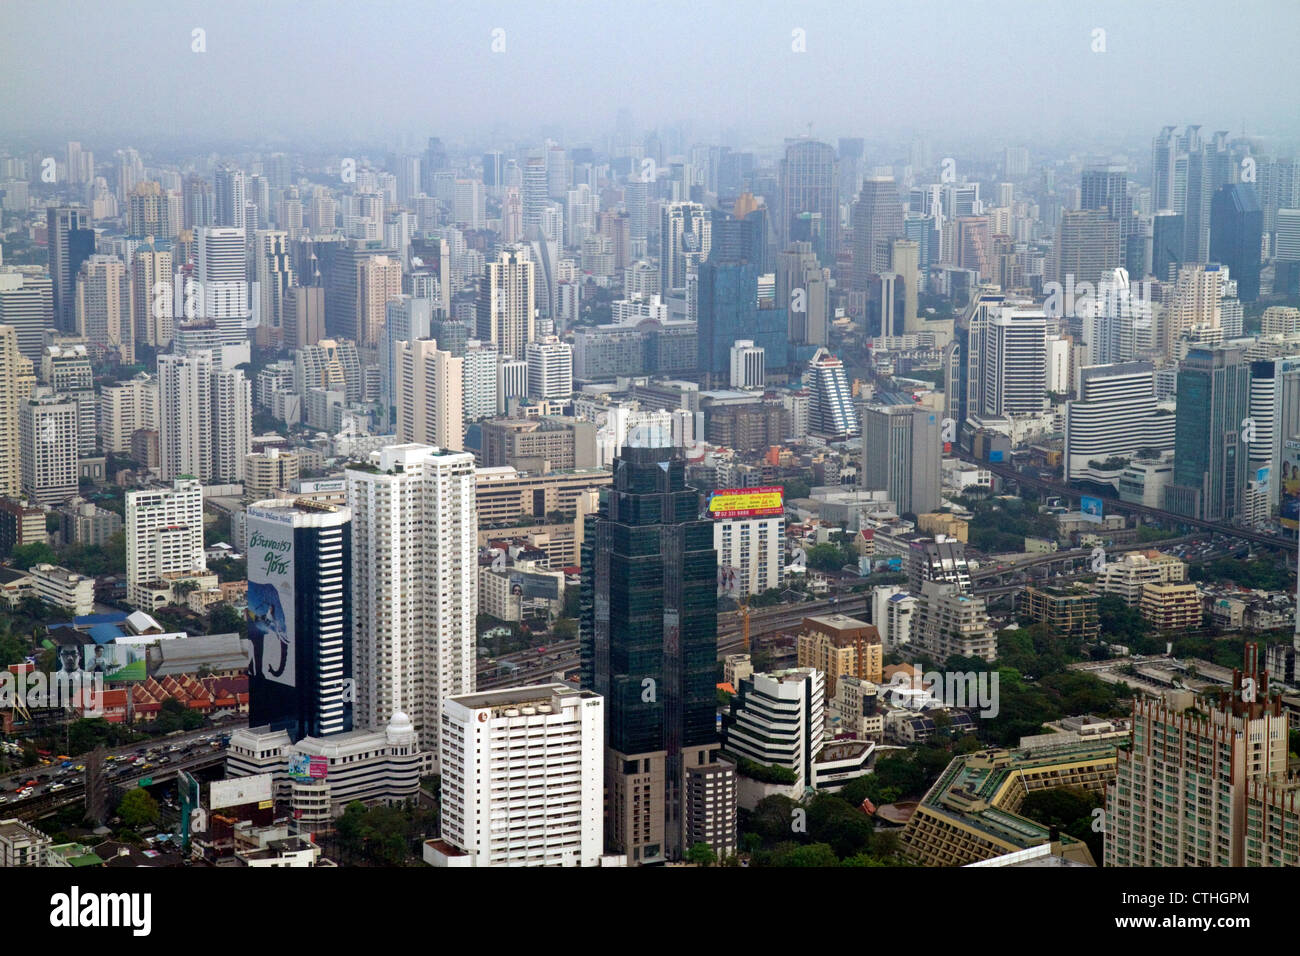 Vue de la prise de la ville de Bangkok Baiyoke Tower II montrant la pollution atmosphérique et le smog, la Thaïlande. Banque D'Images